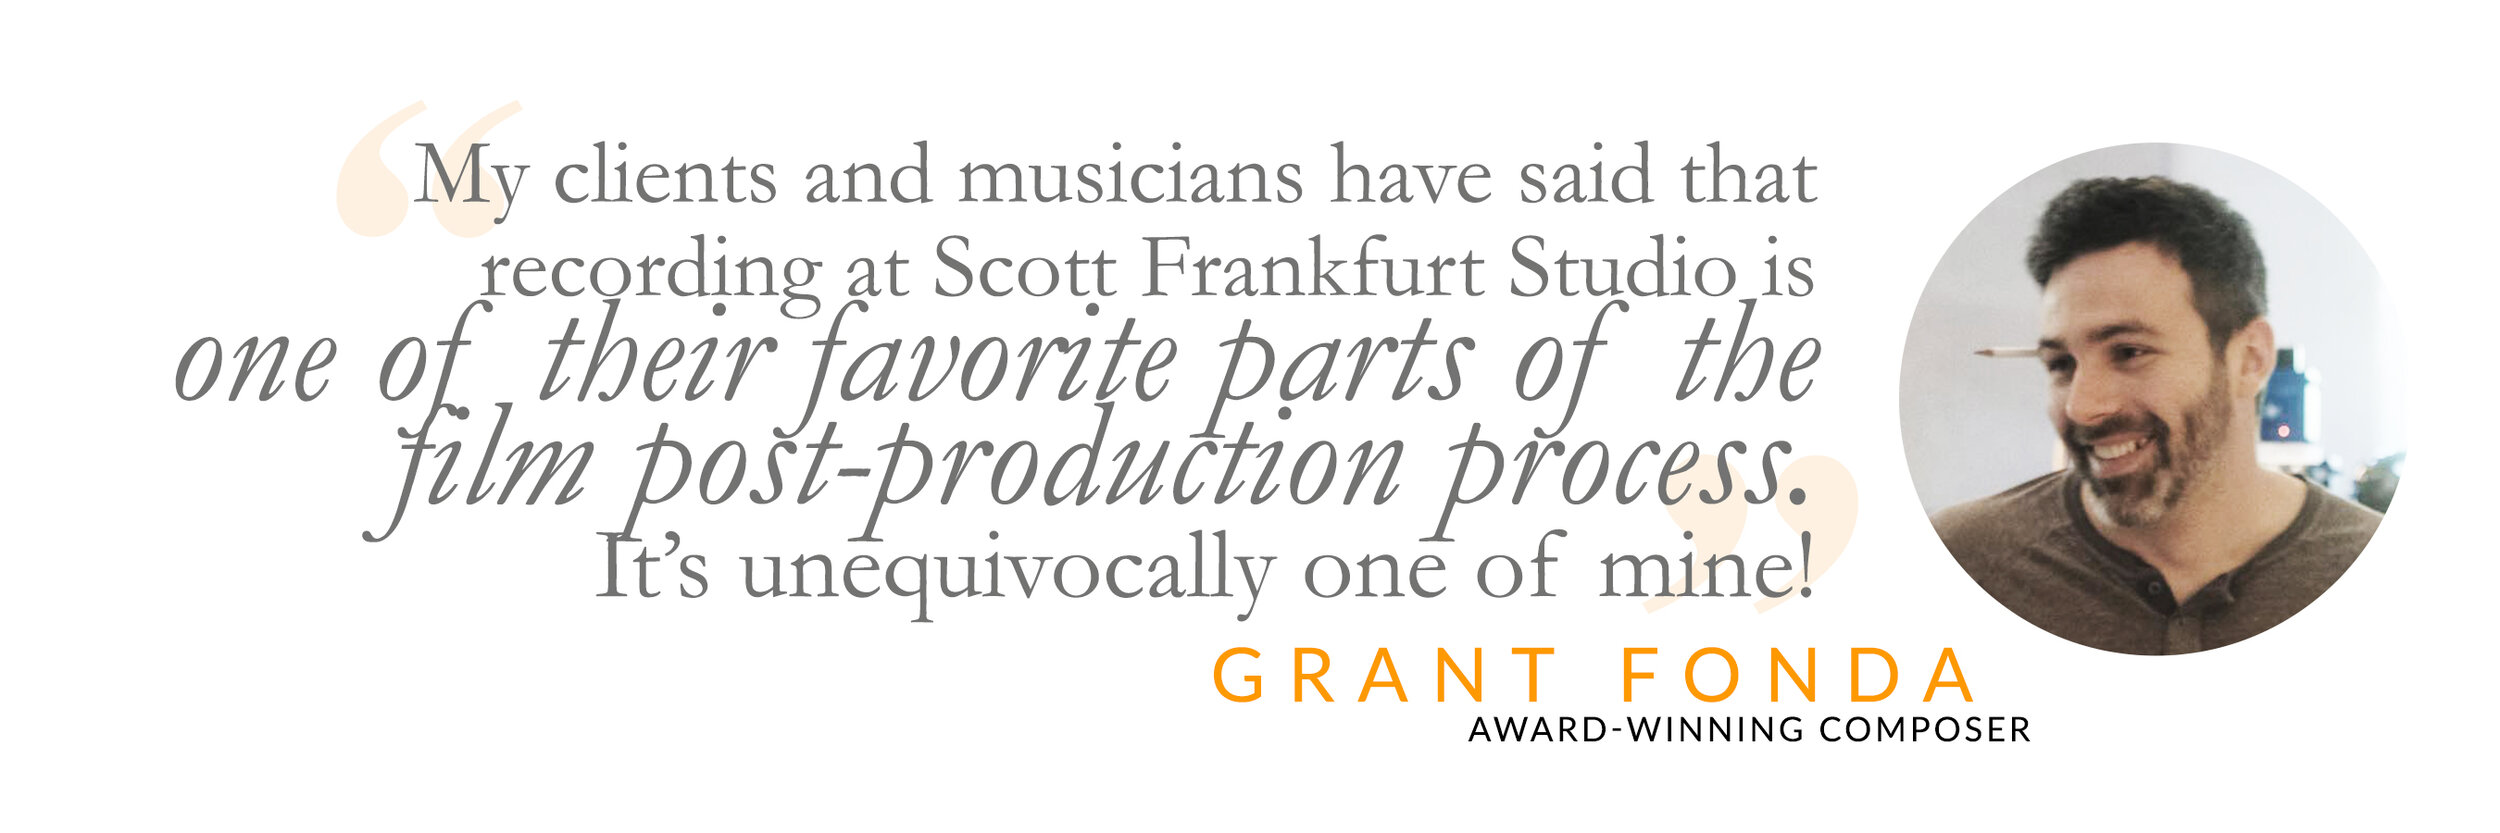 Grant Fonda | Award-winning Composer